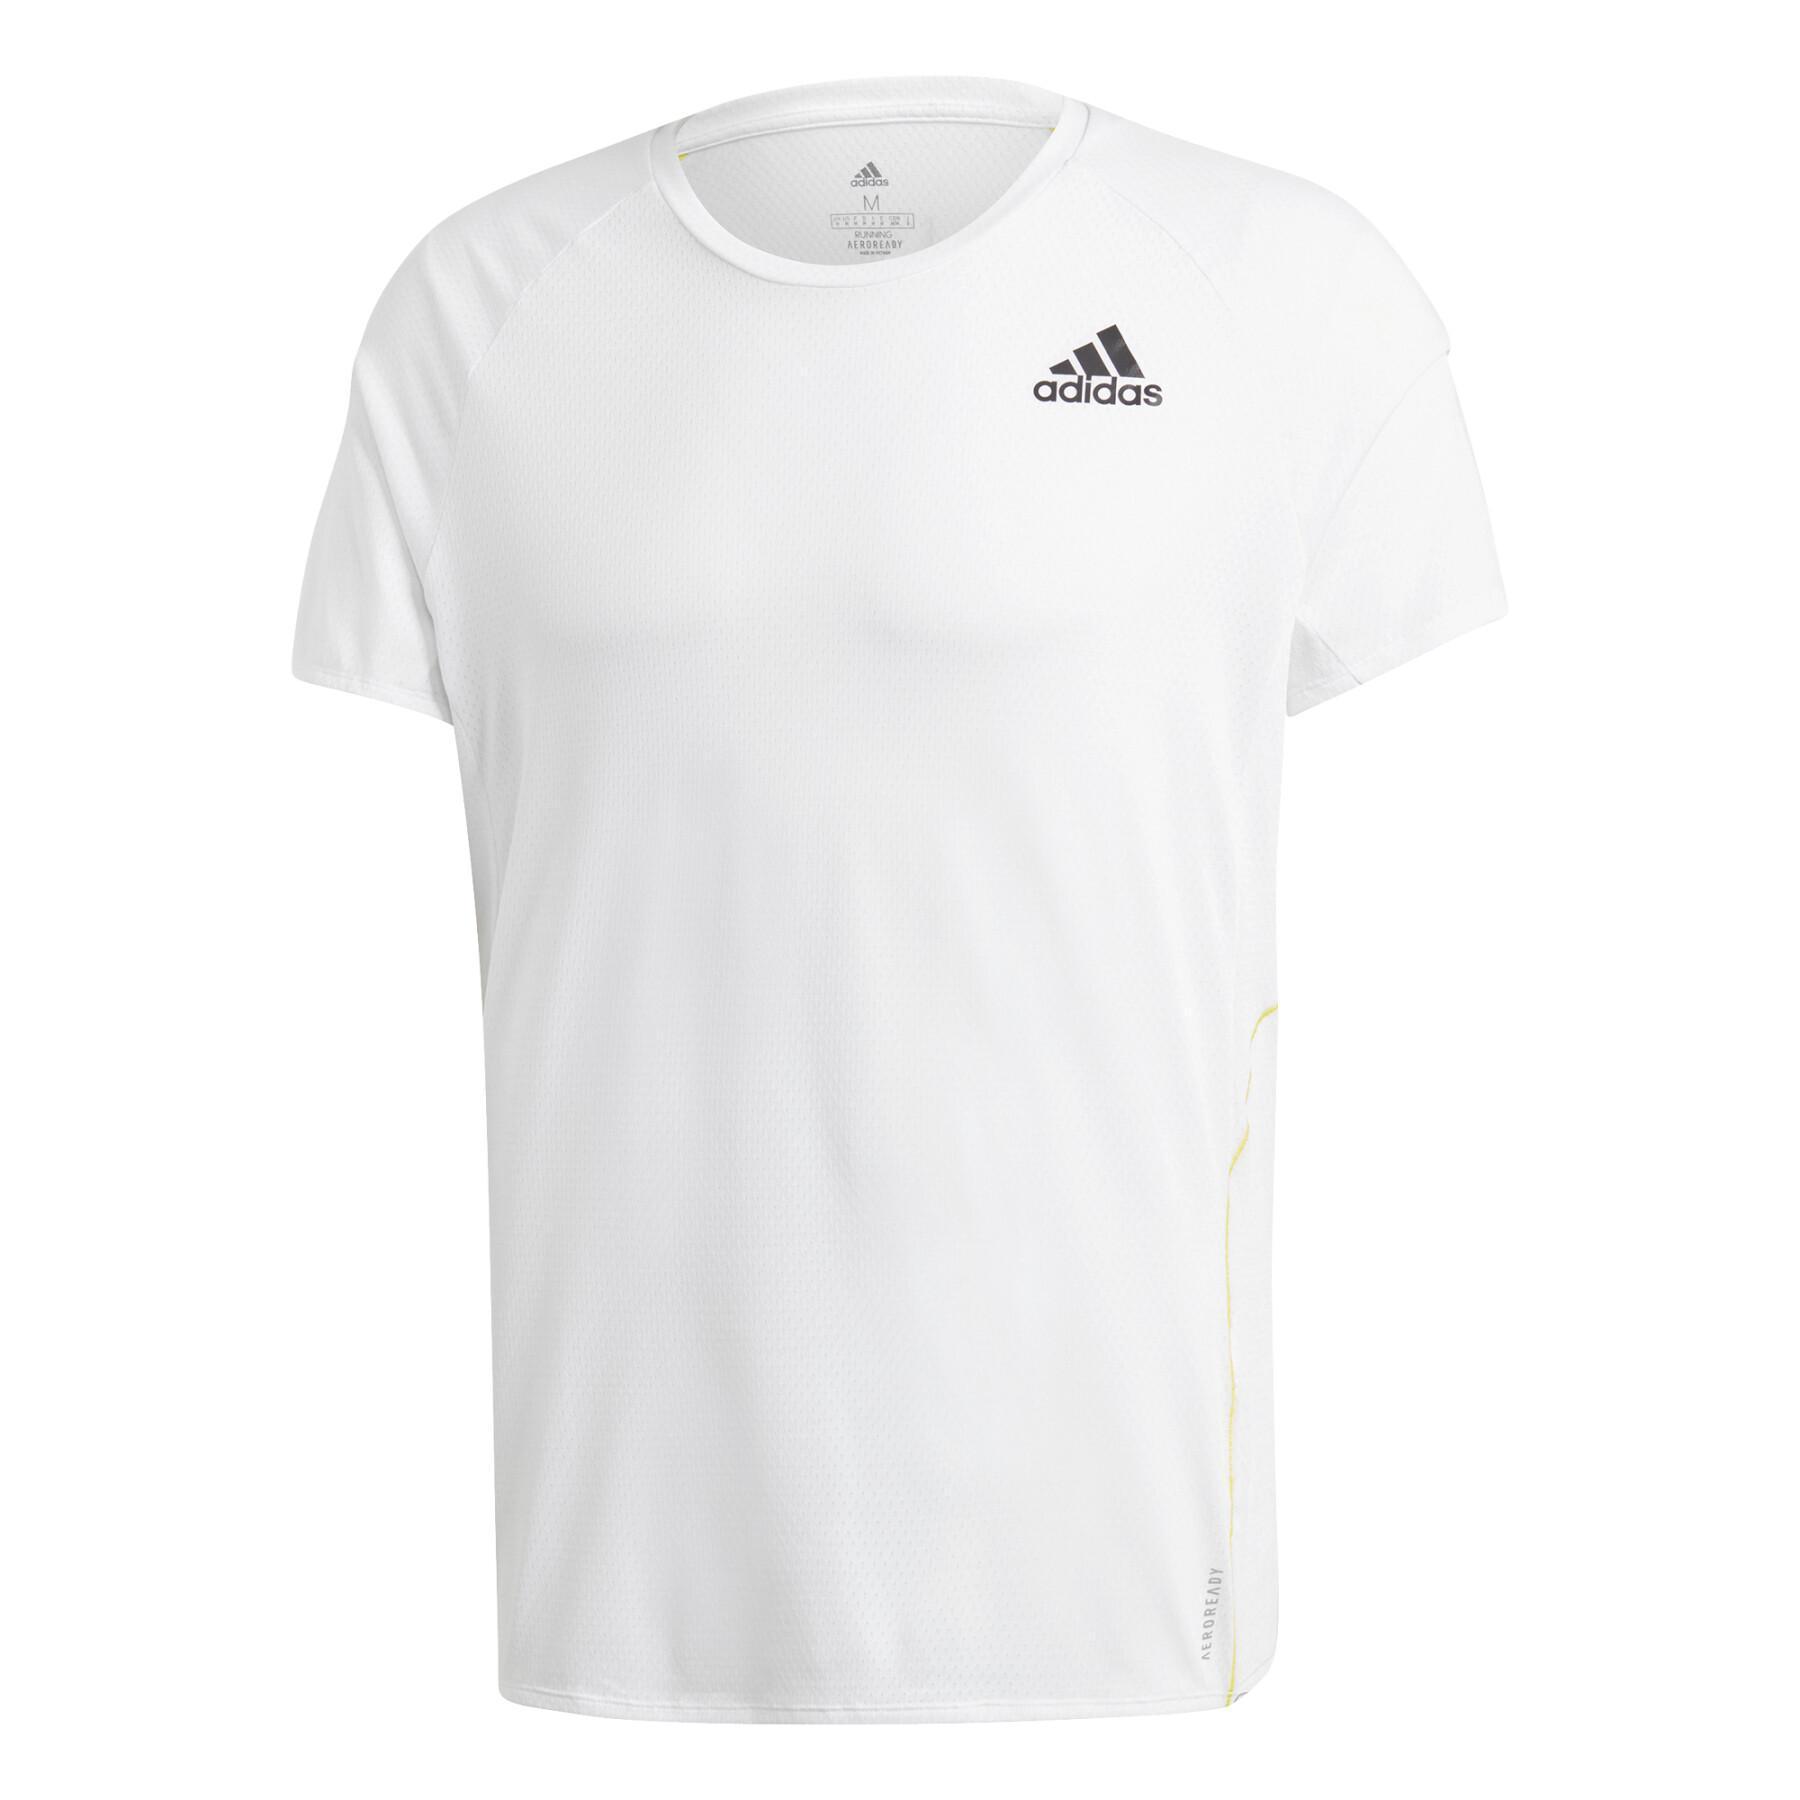 T-shirt Runner adidas 2021